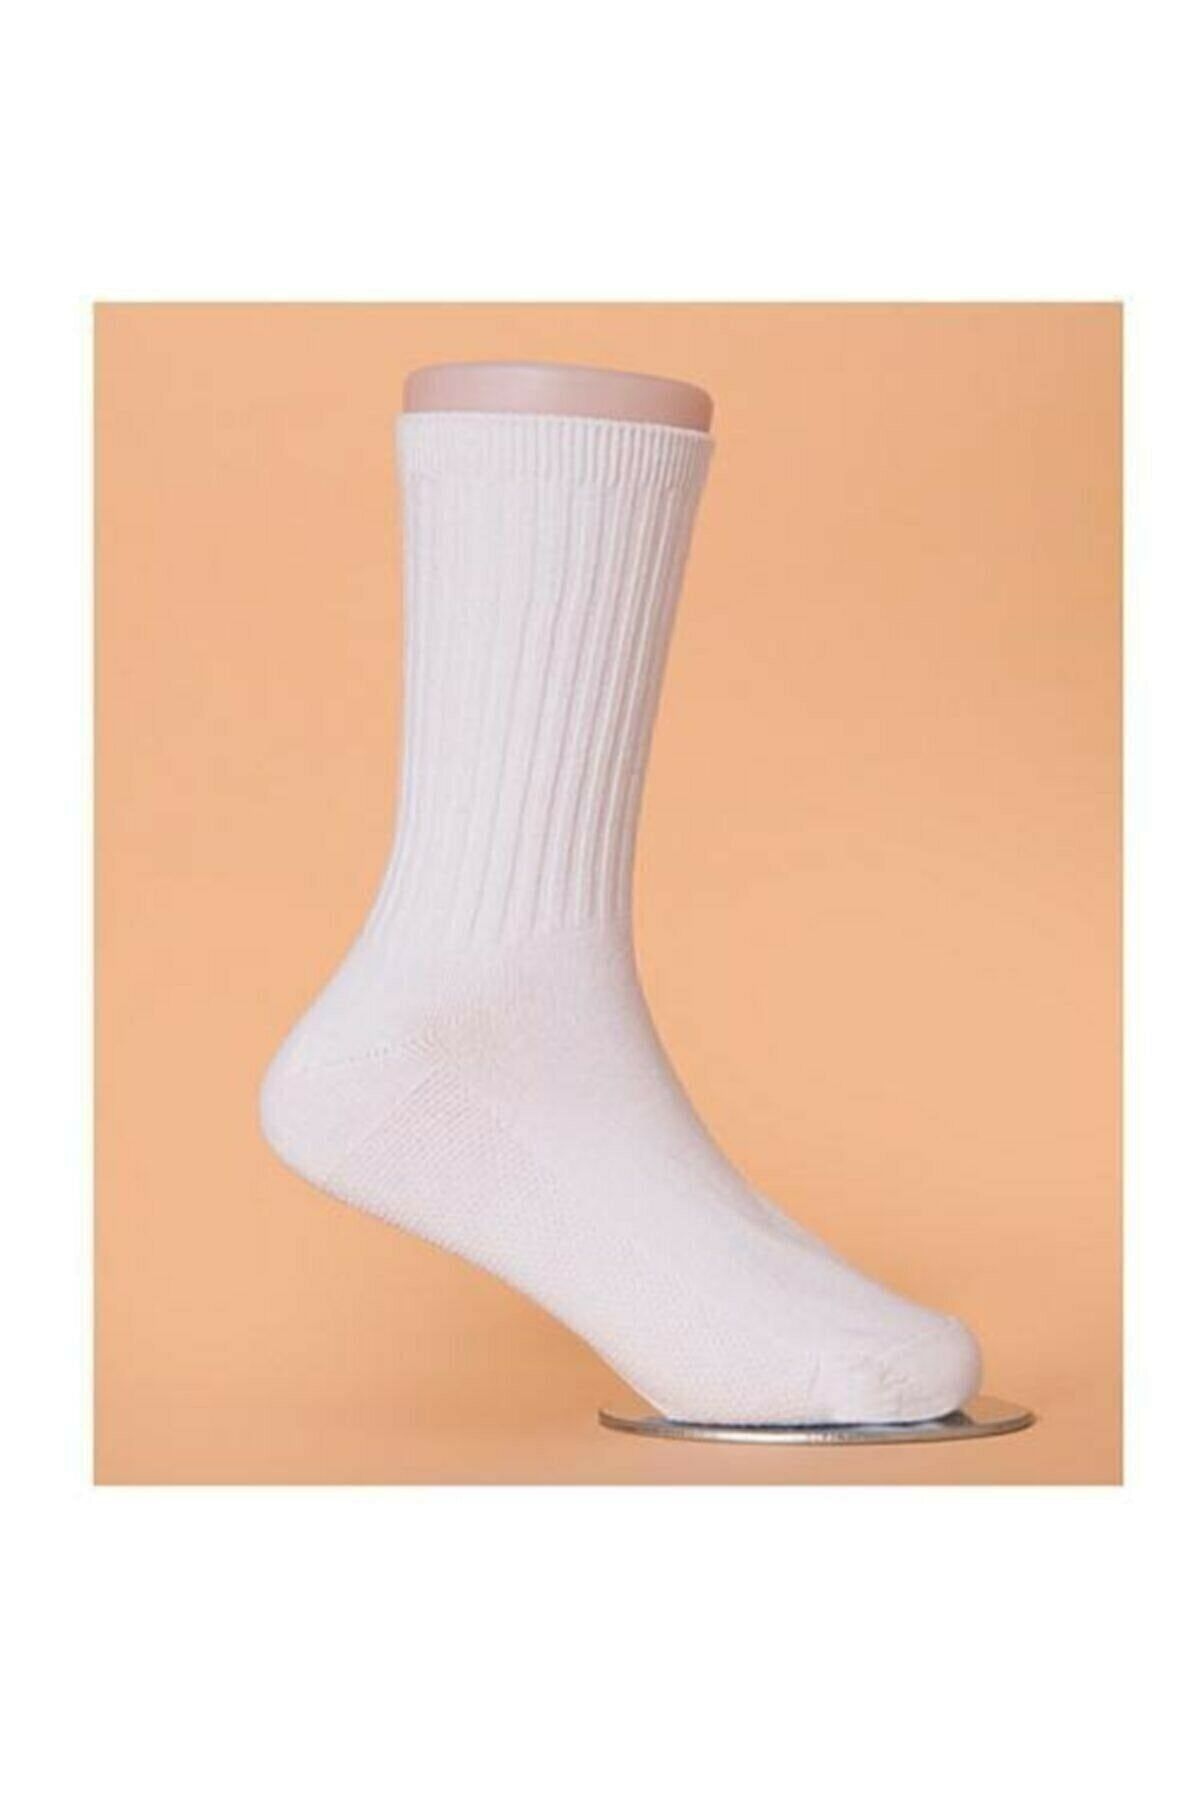 CKV CENTER Unisex Beyaz Spor Çorap Halısaha Çorabı Antrenman Çorabı